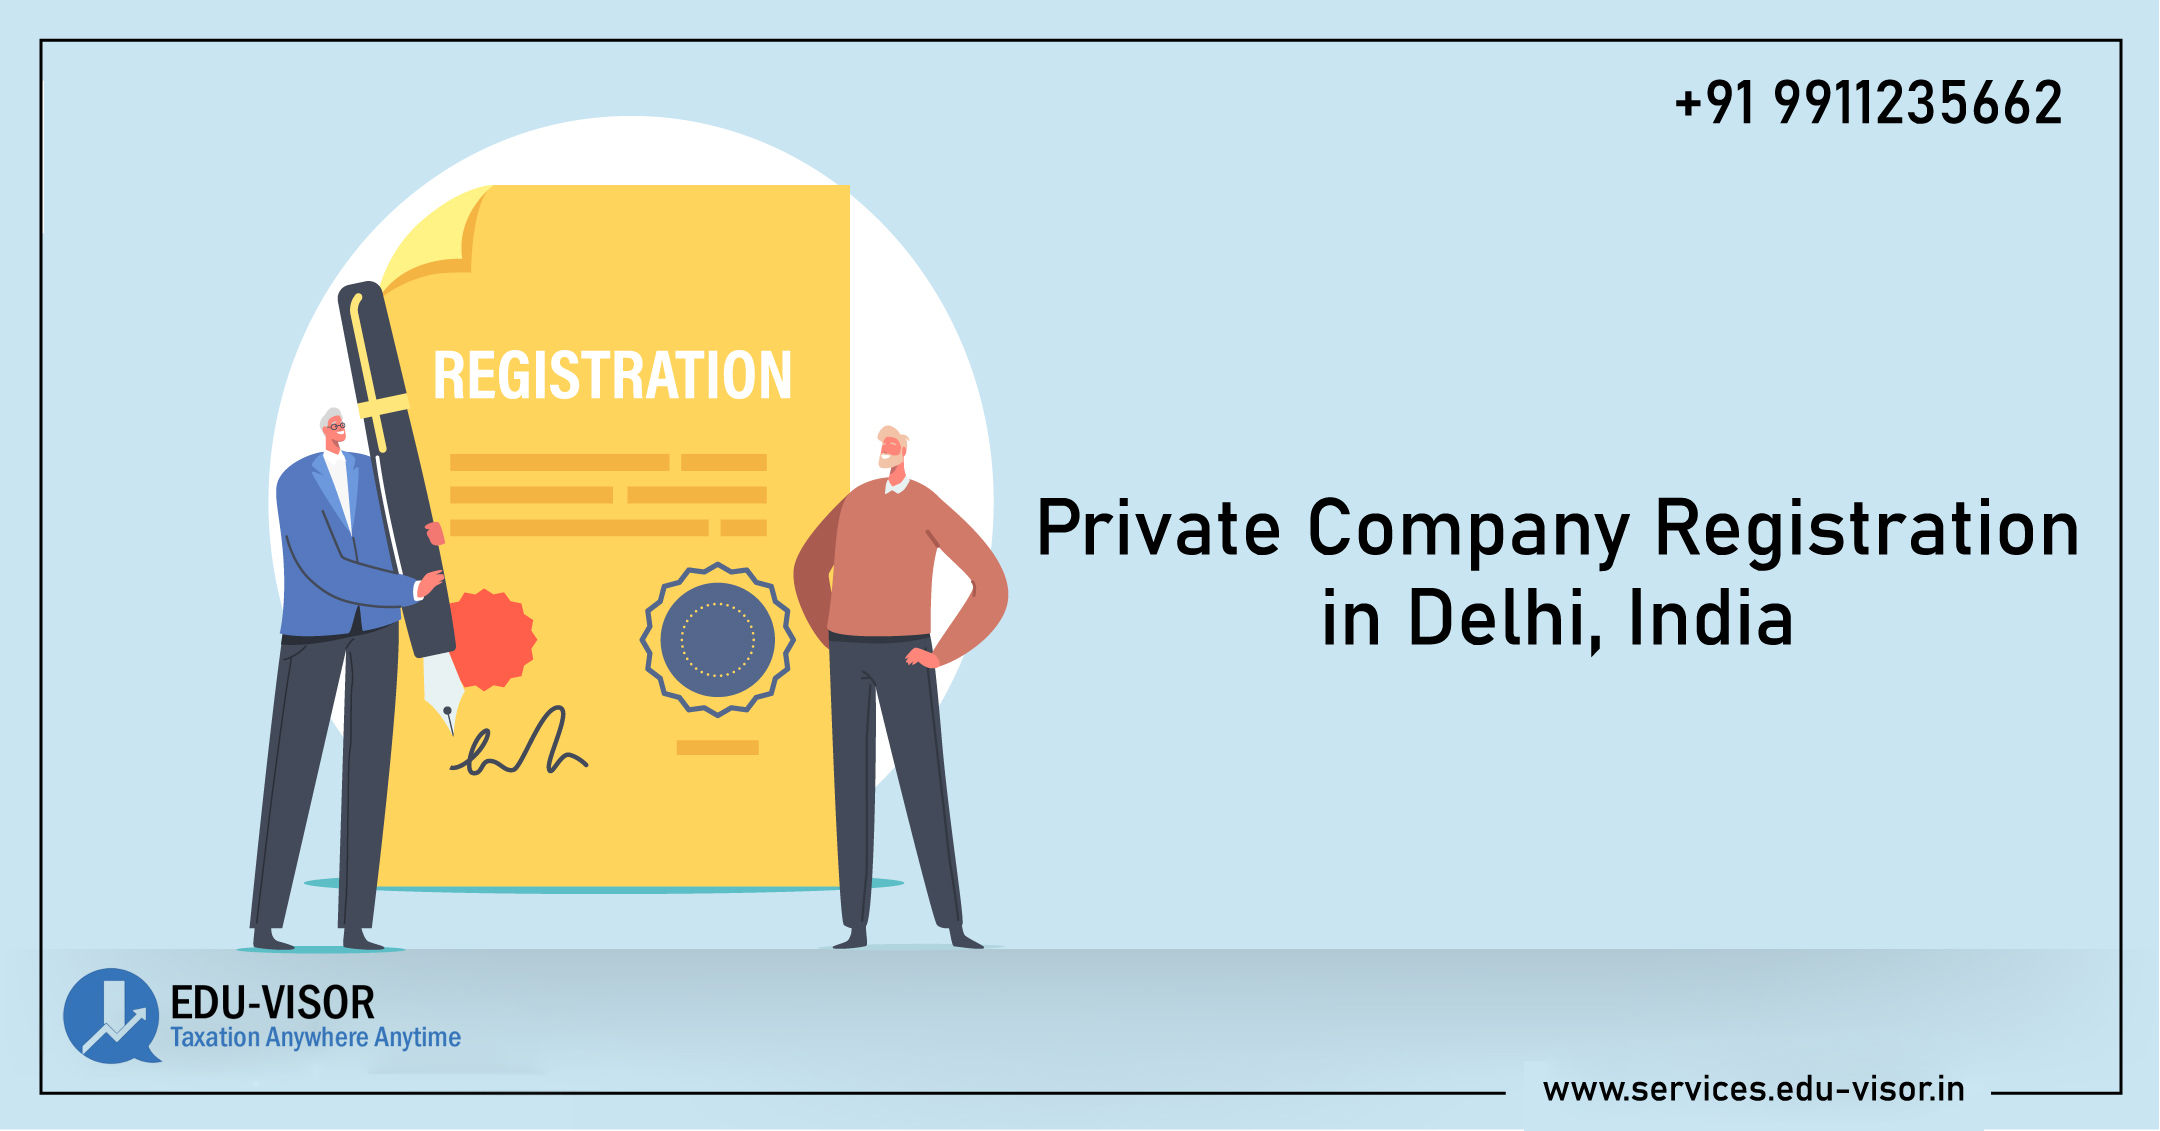 Private Company Registration in Delhi, India